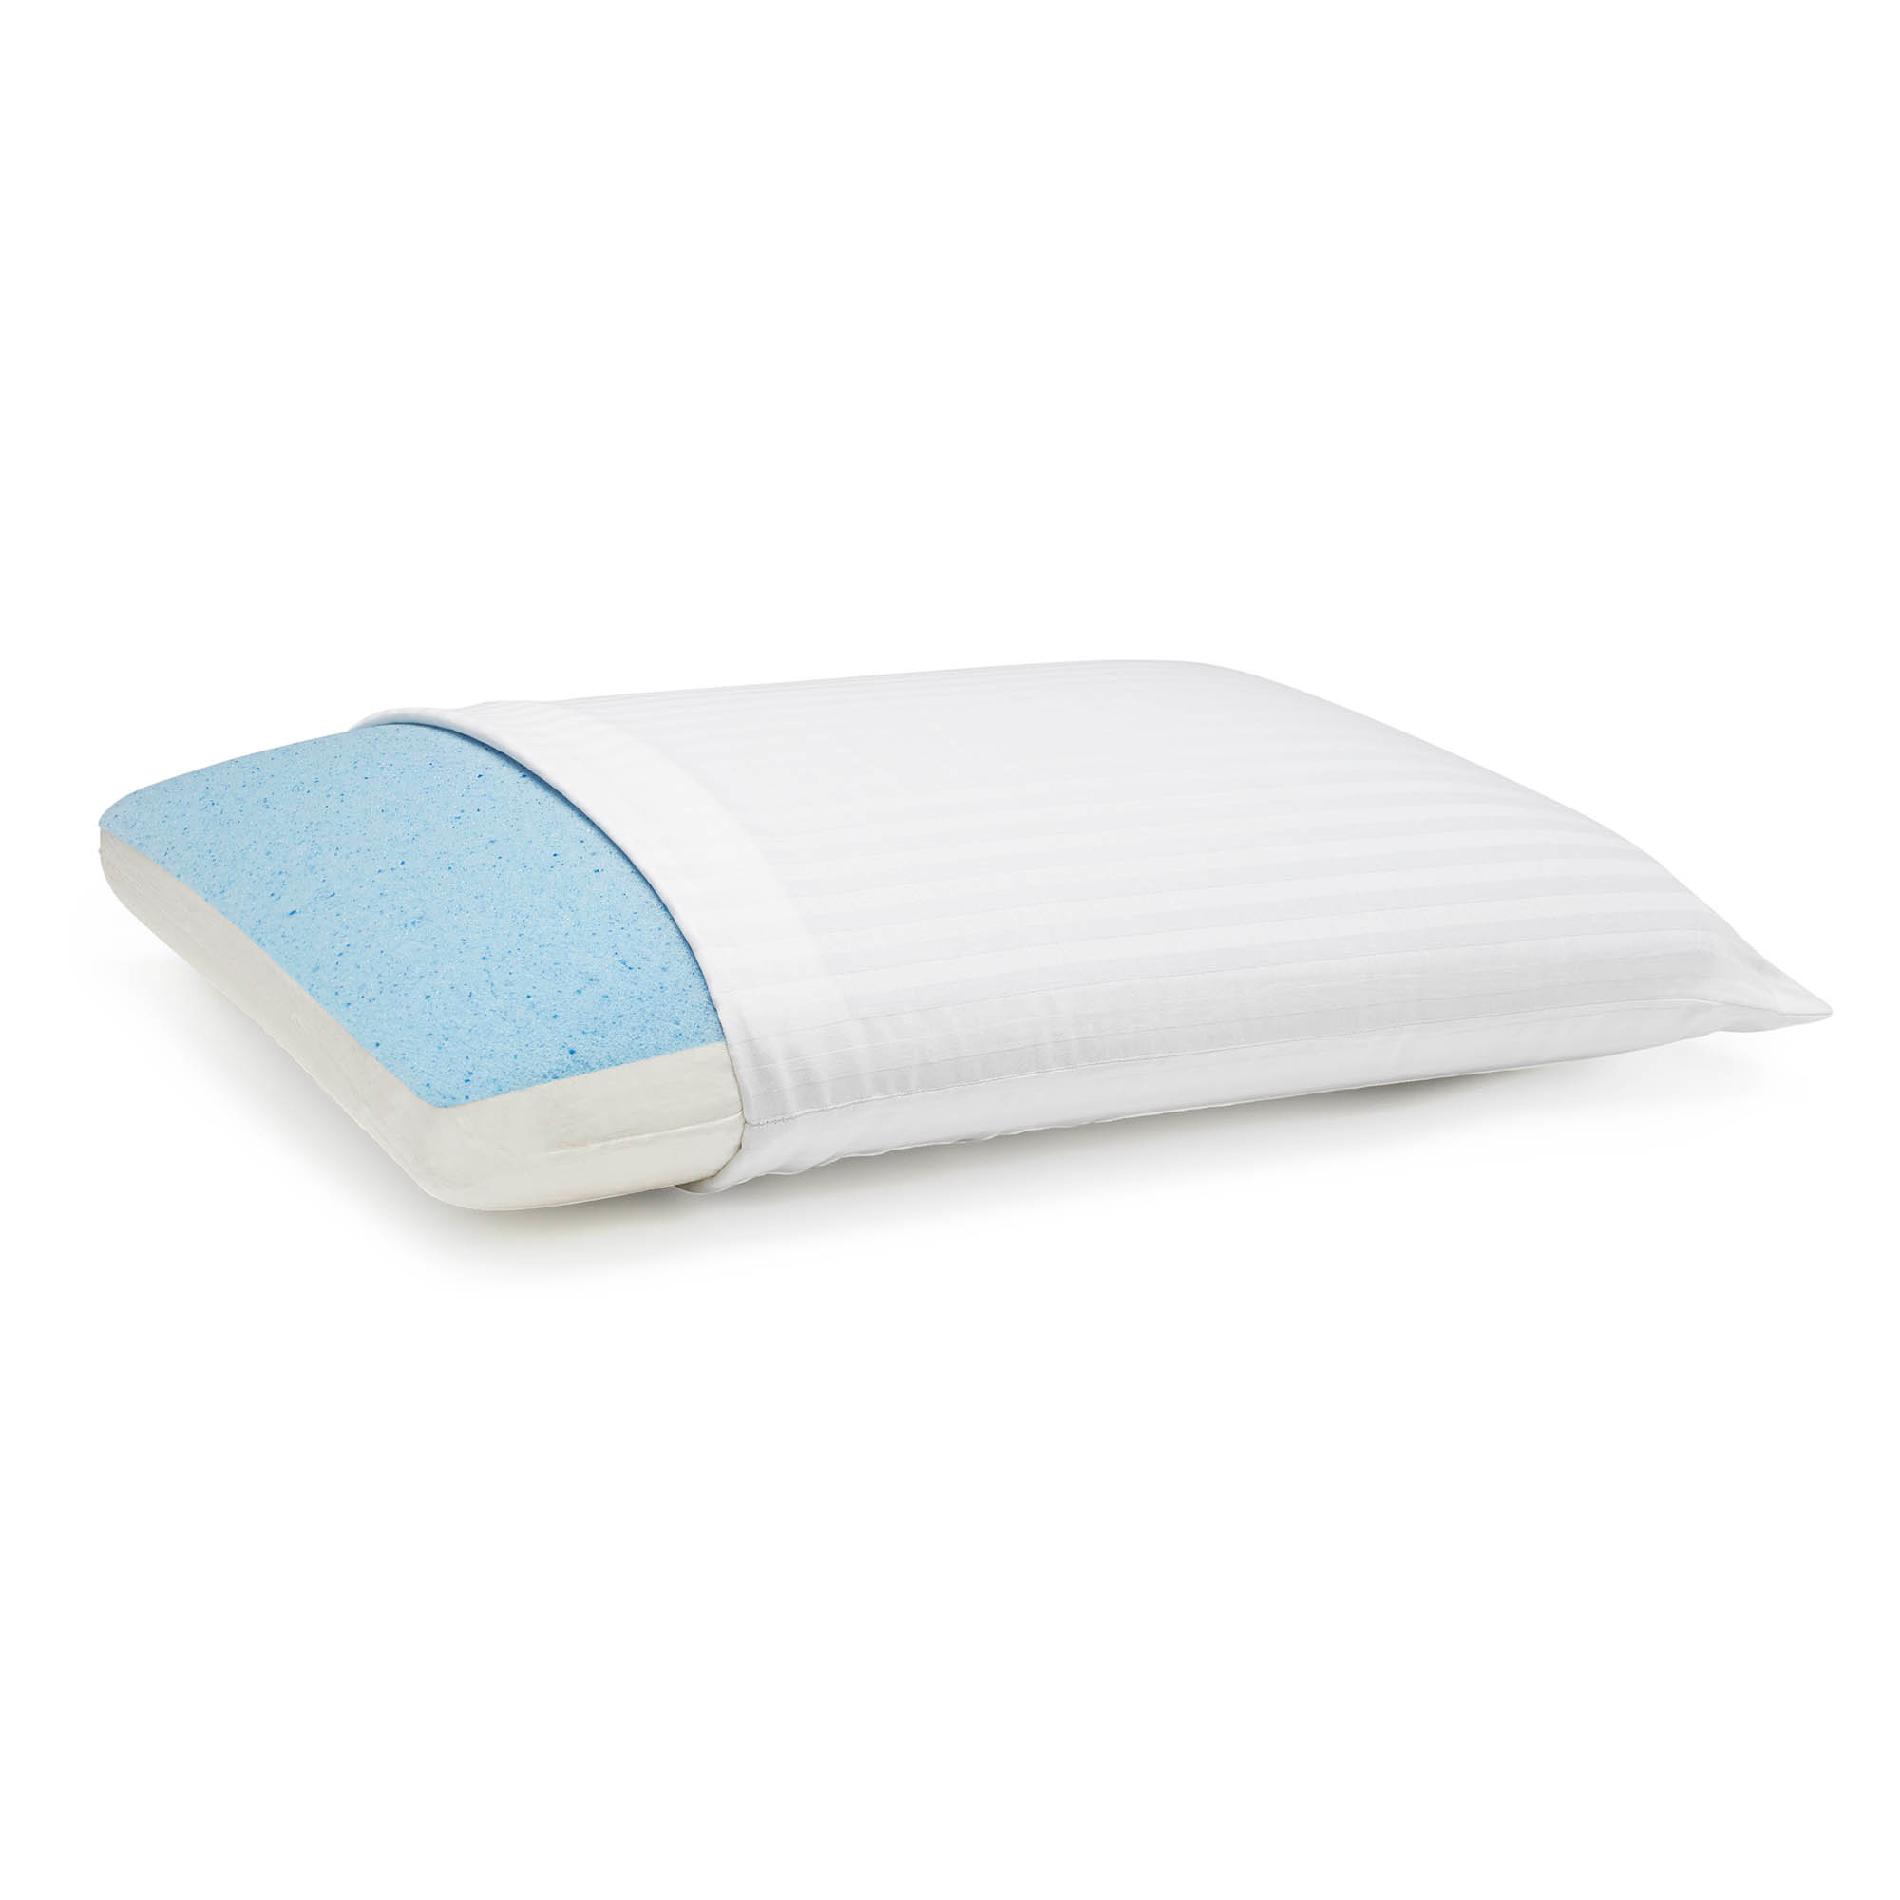 kmart memory foam pillow review